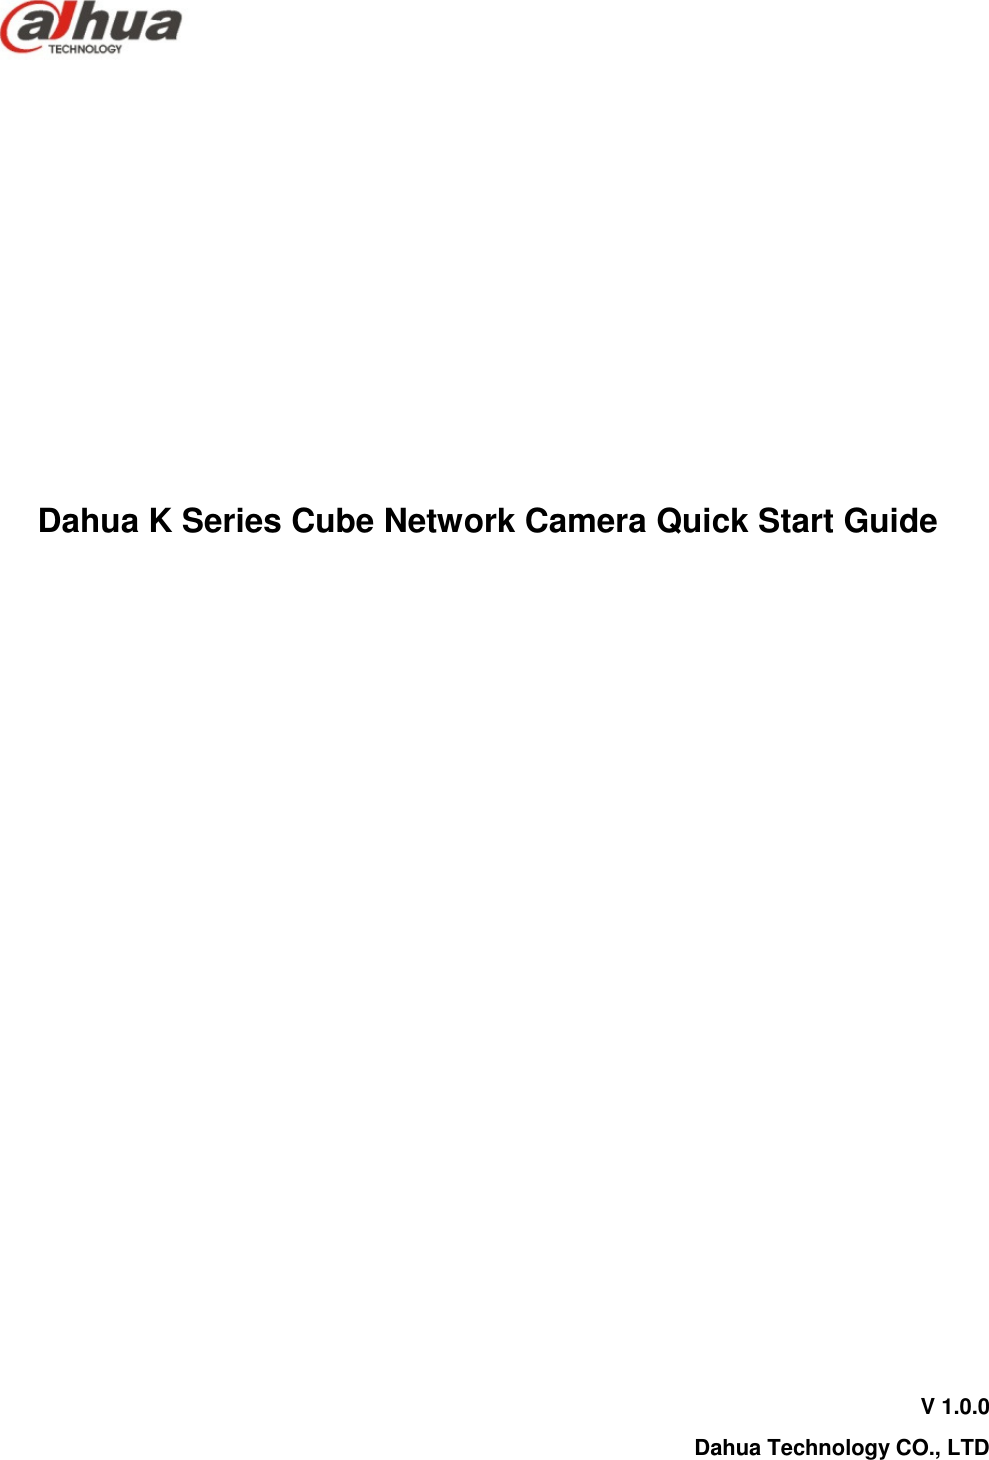         Dahua K Series Cube Network Camera Quick Start Guide              V 1.0.0 Dahua Technology CO., LTD  